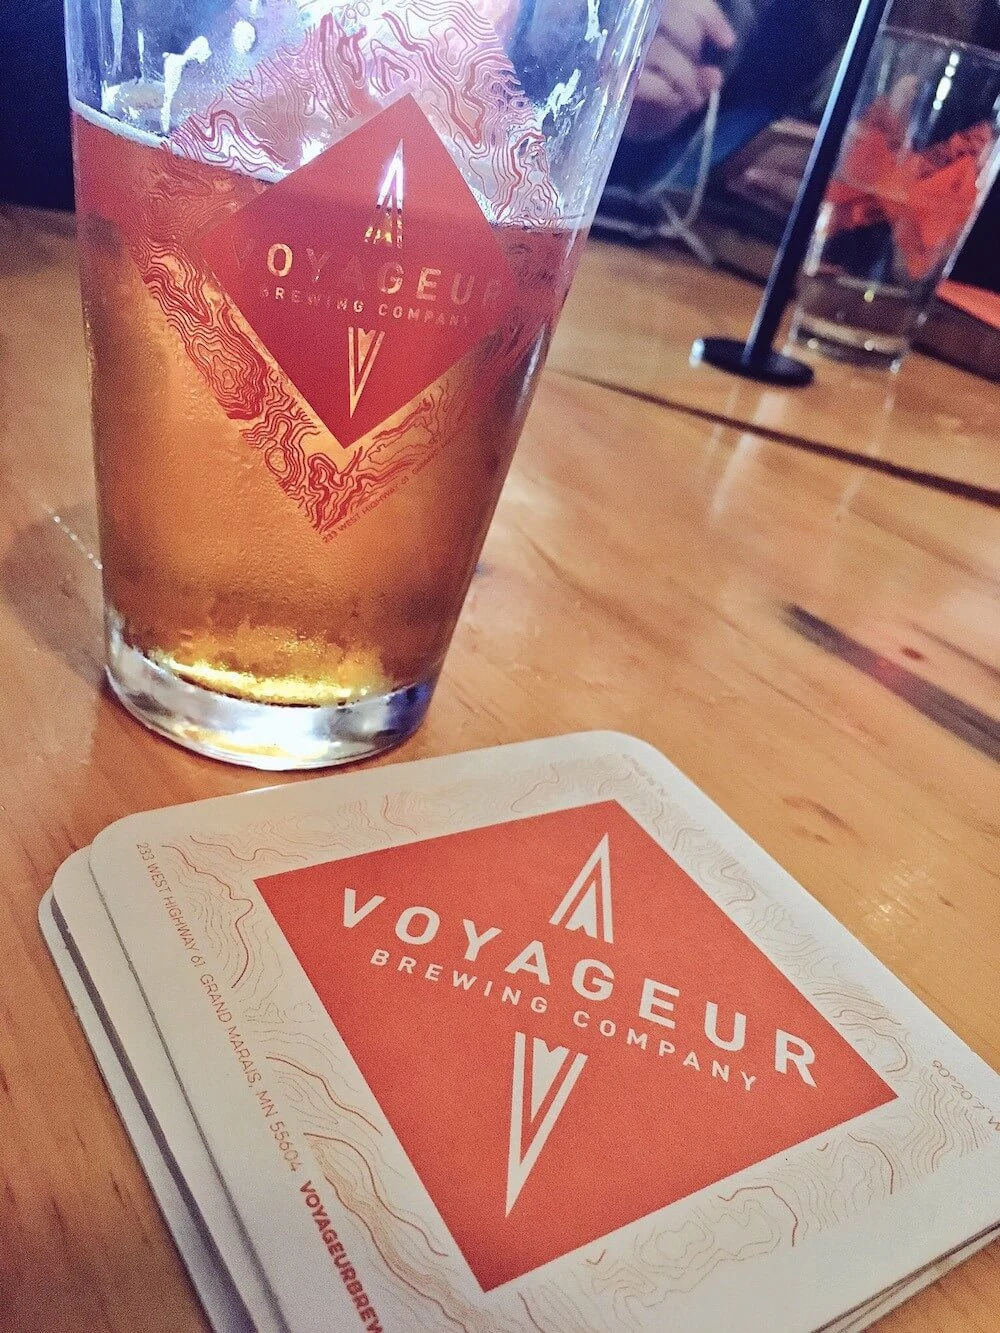 Voyageur brewery